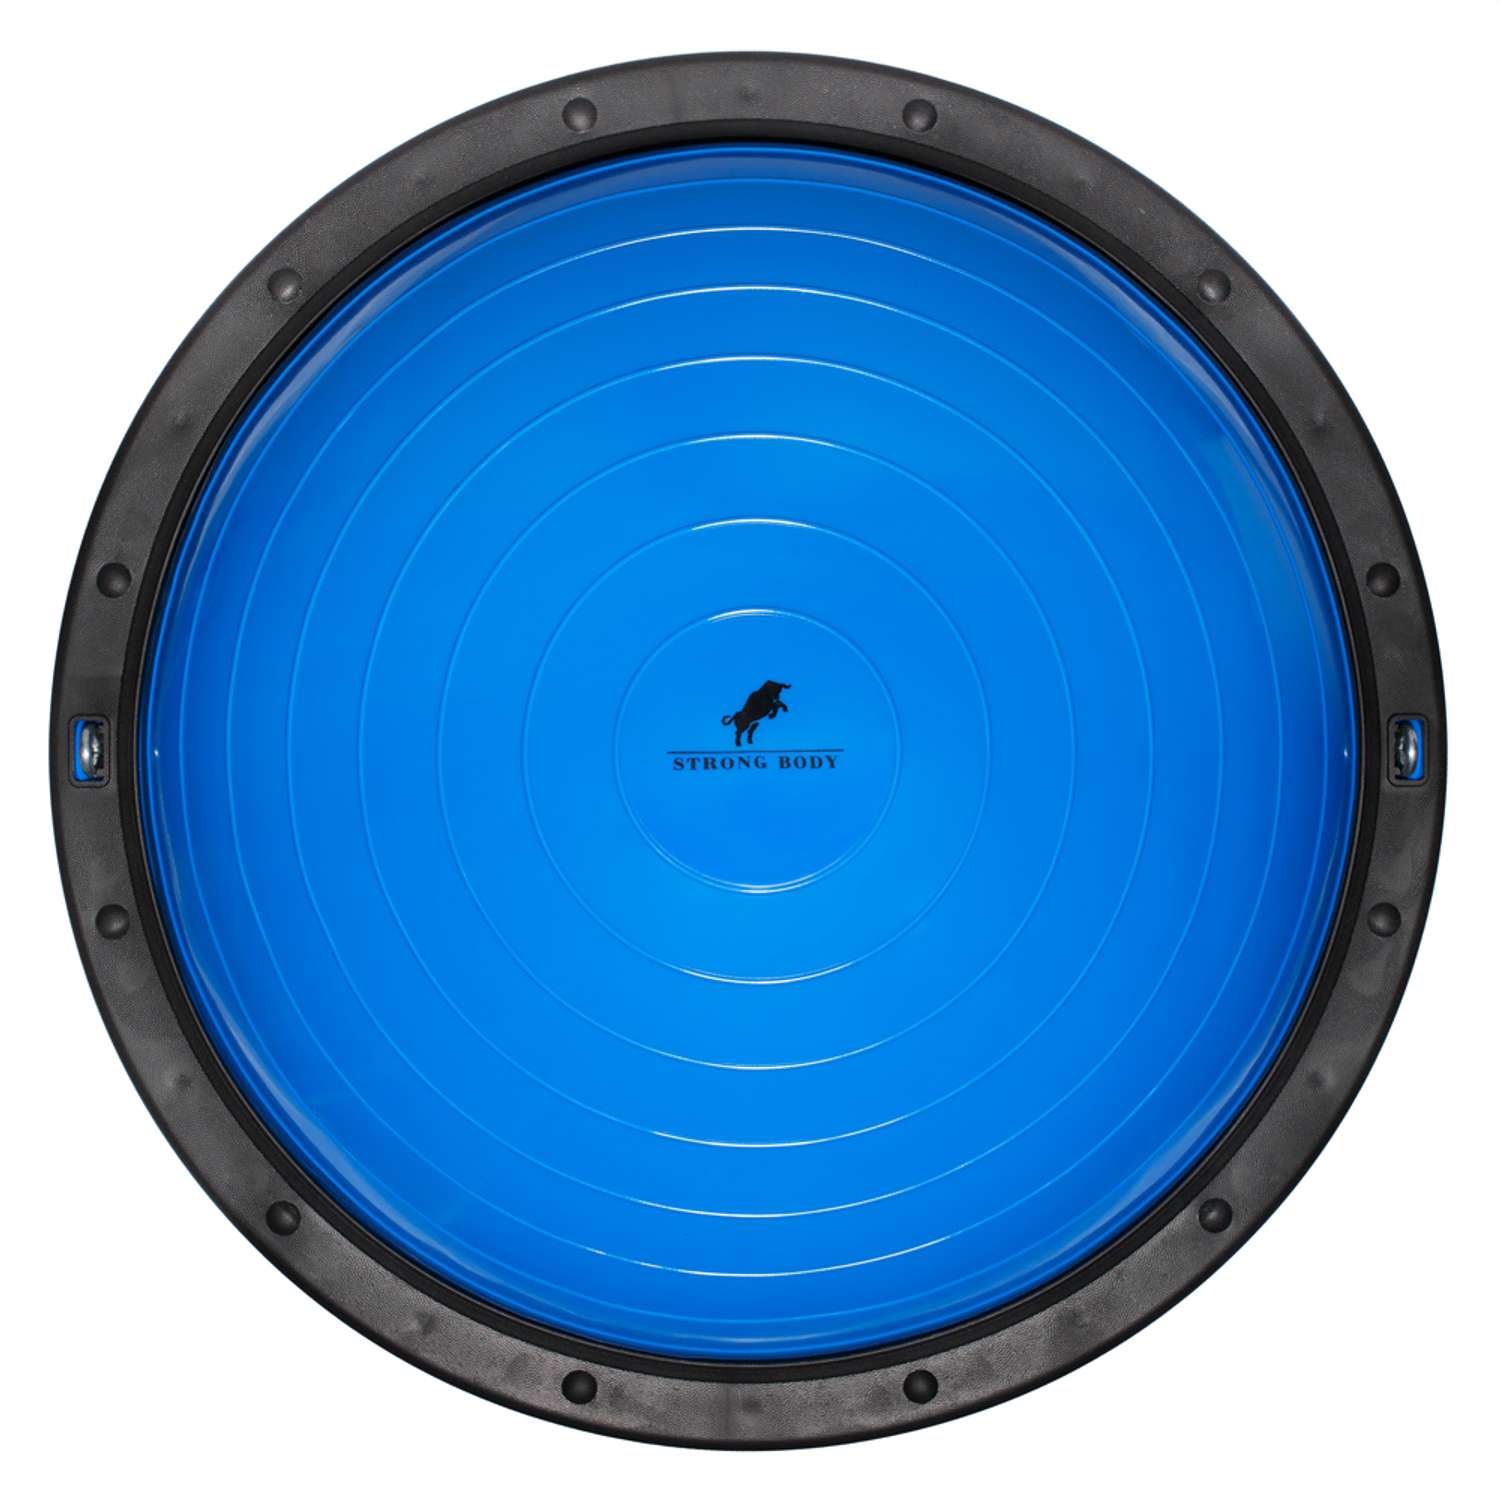 Балансировочная полусфера BOSU STRONG BODY PROFI в комплекте со съемными эспандерами синяя - фото 5